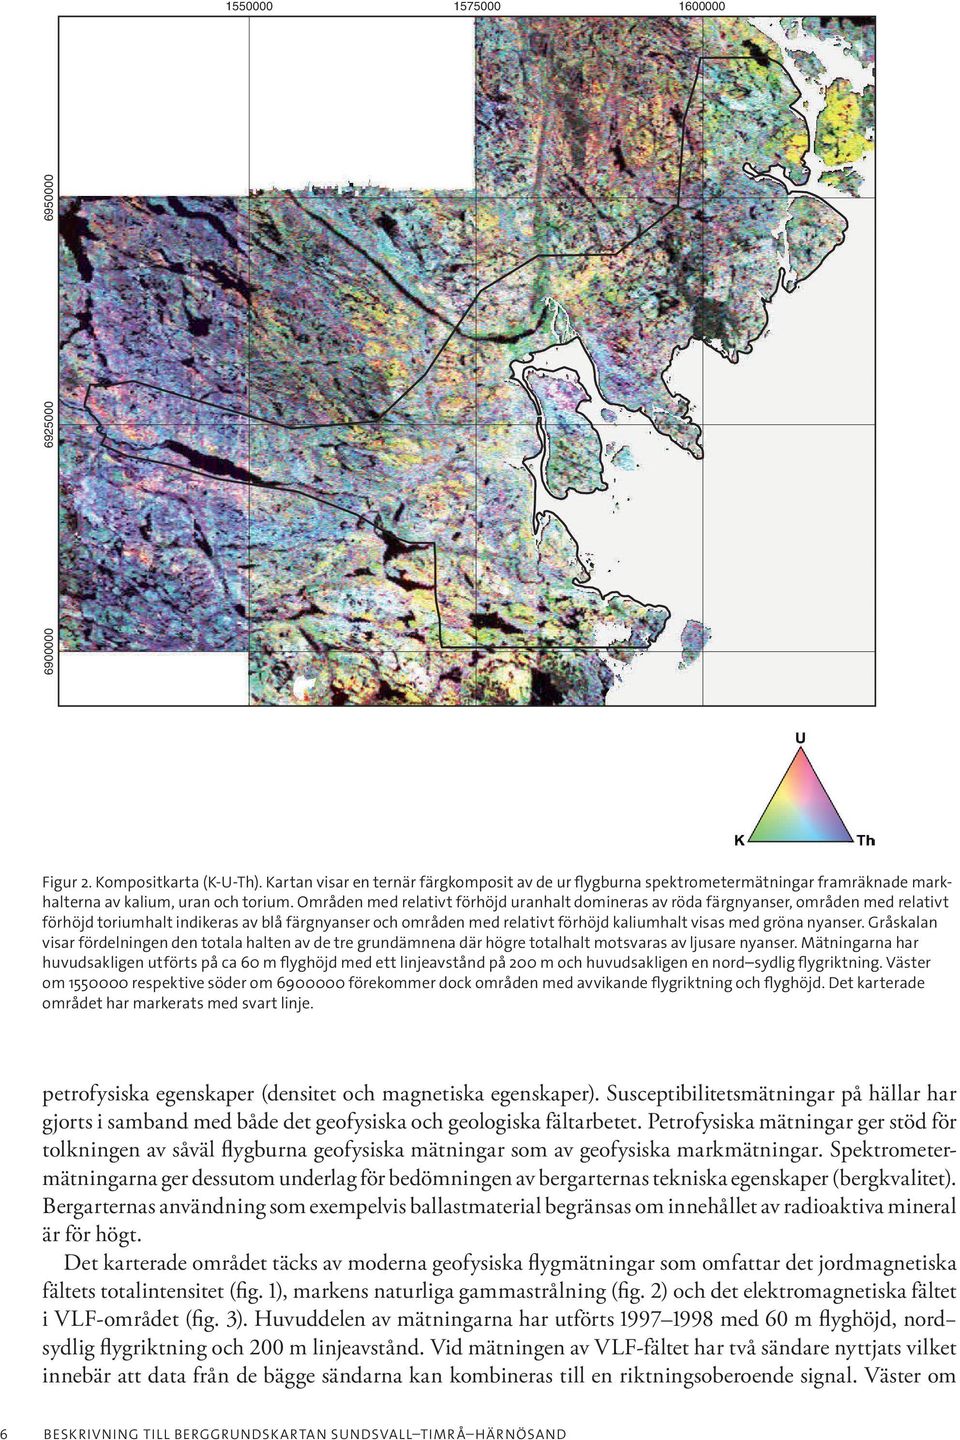 Områden med relativt förhöjd uranhalt domineras av röda färgnyanser, områden med relativt förhöjd toriumhalt indikeras av blå färgnyanser och områden med relativt förhöjd kaliumhalt visas med gröna